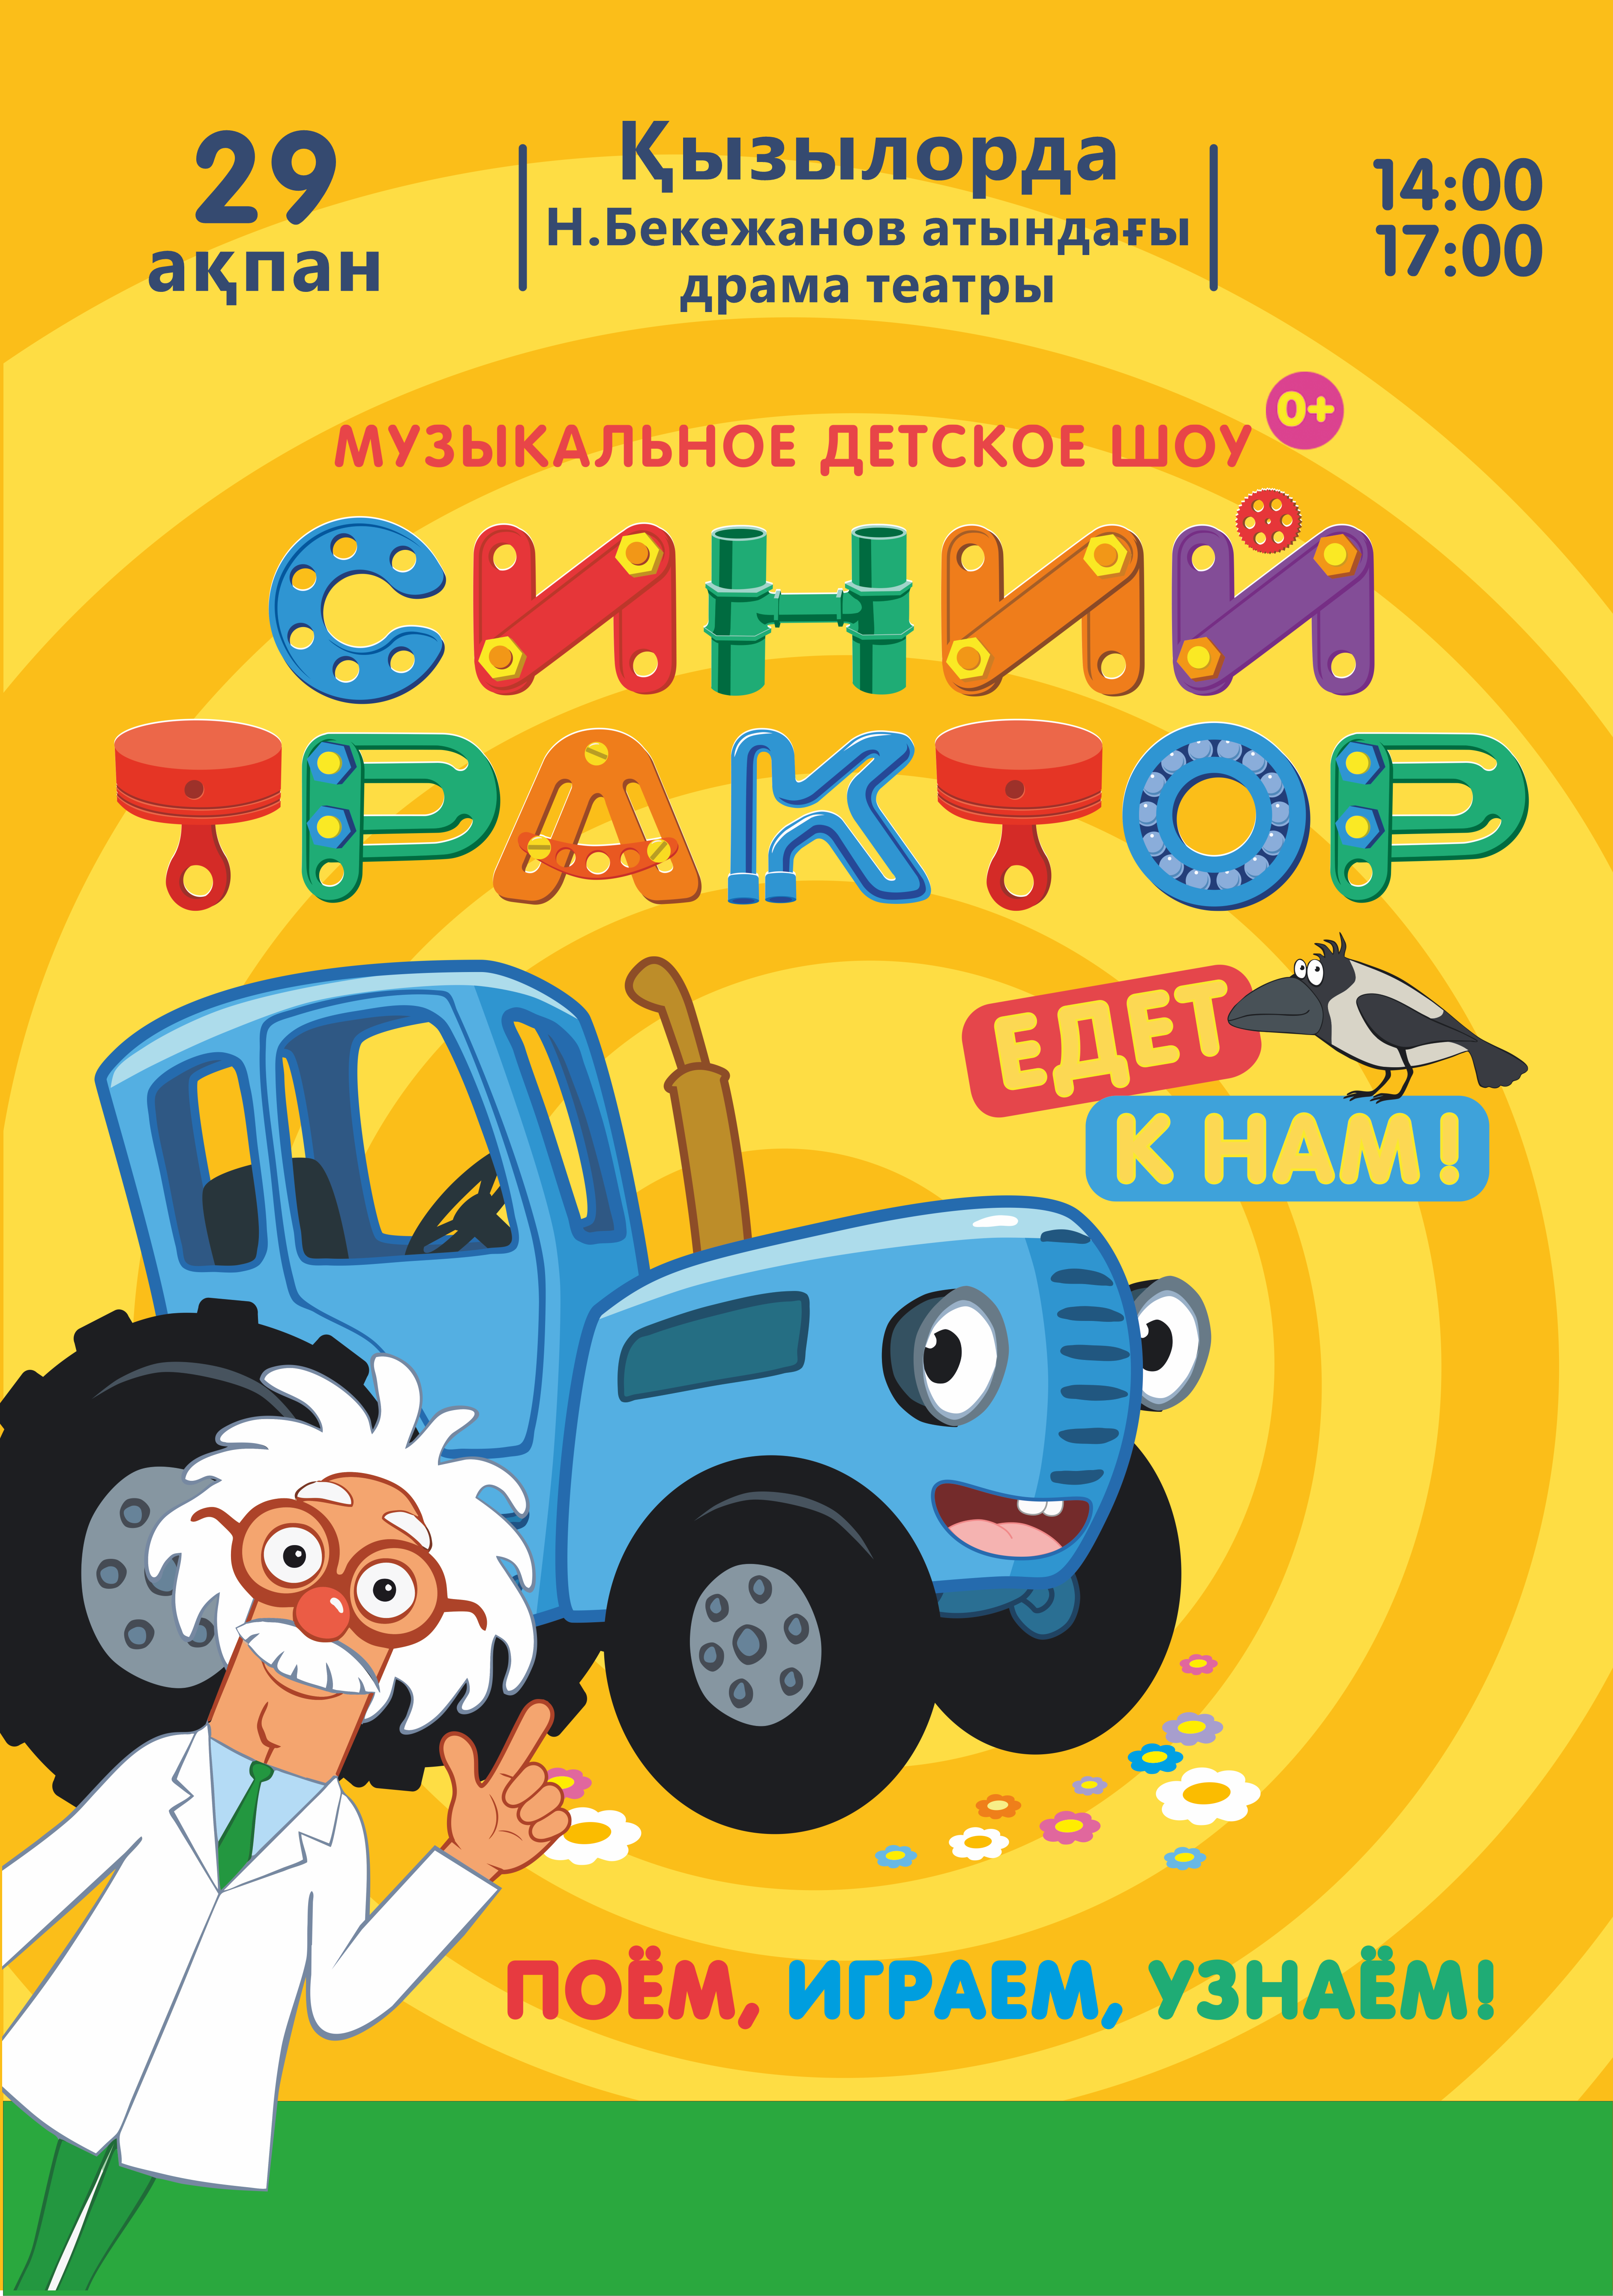 Афиша меропрития: Шоу "Синий трактор" в Кызылорде сеанс 1